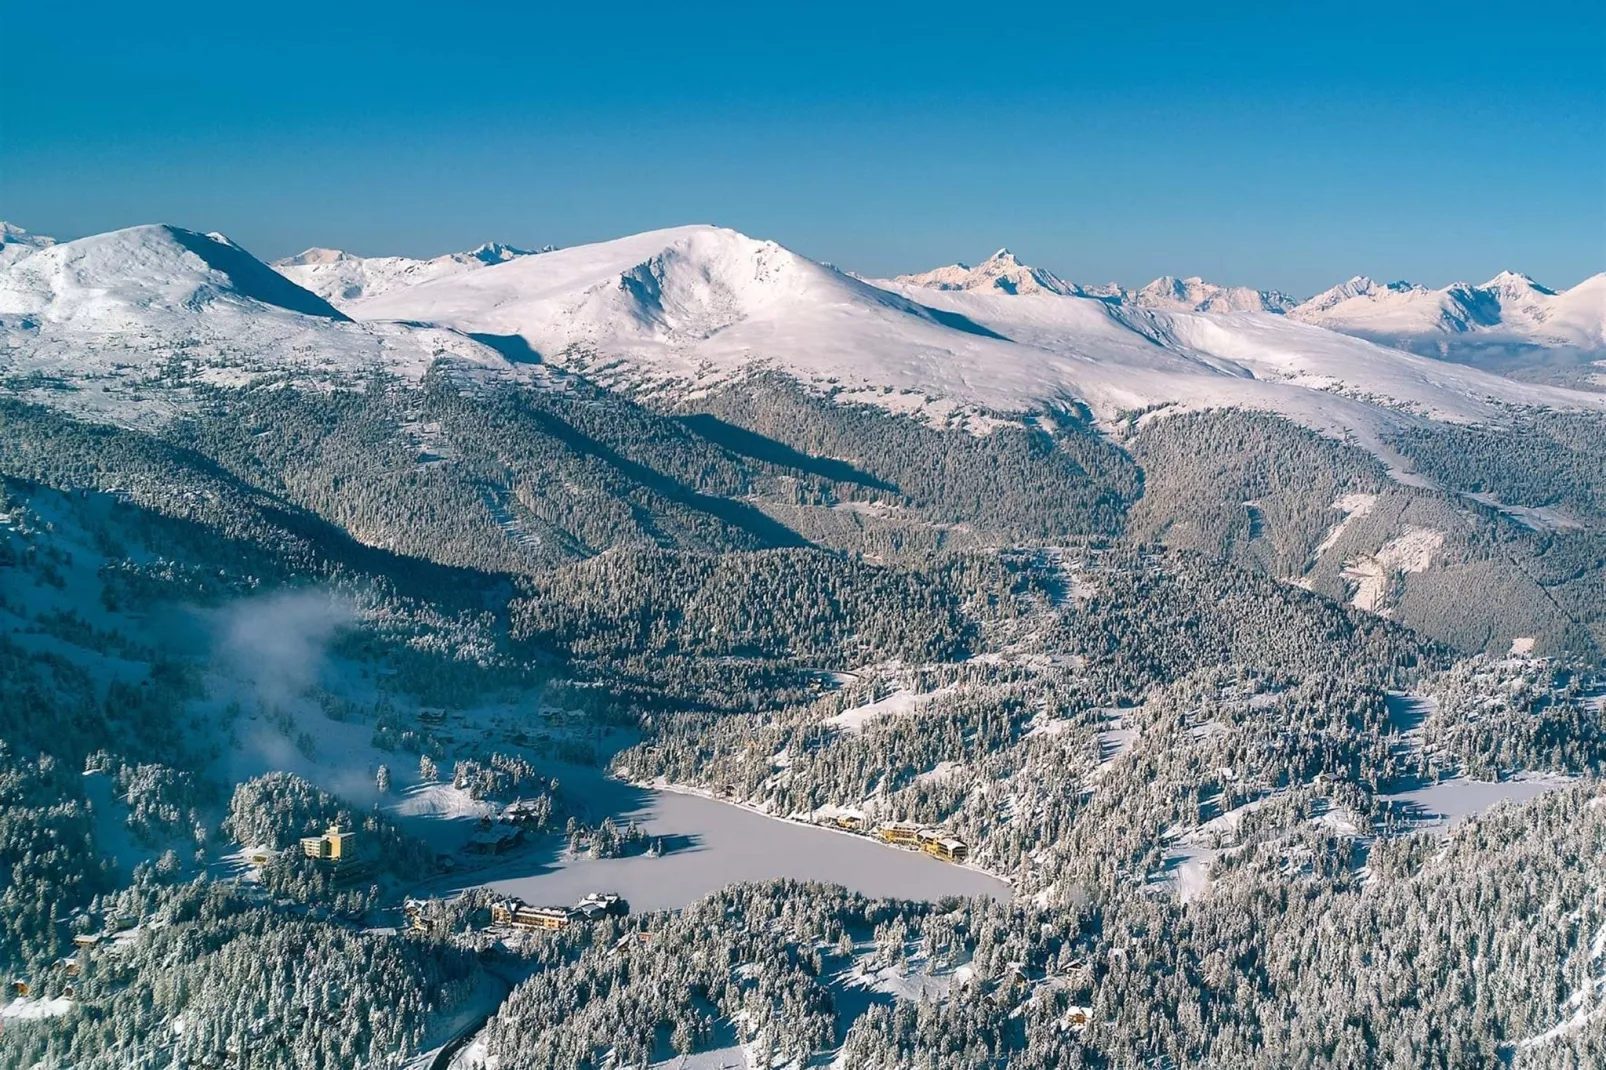 Alpenpark Turrach Chalets 1-Gebied winter 20km